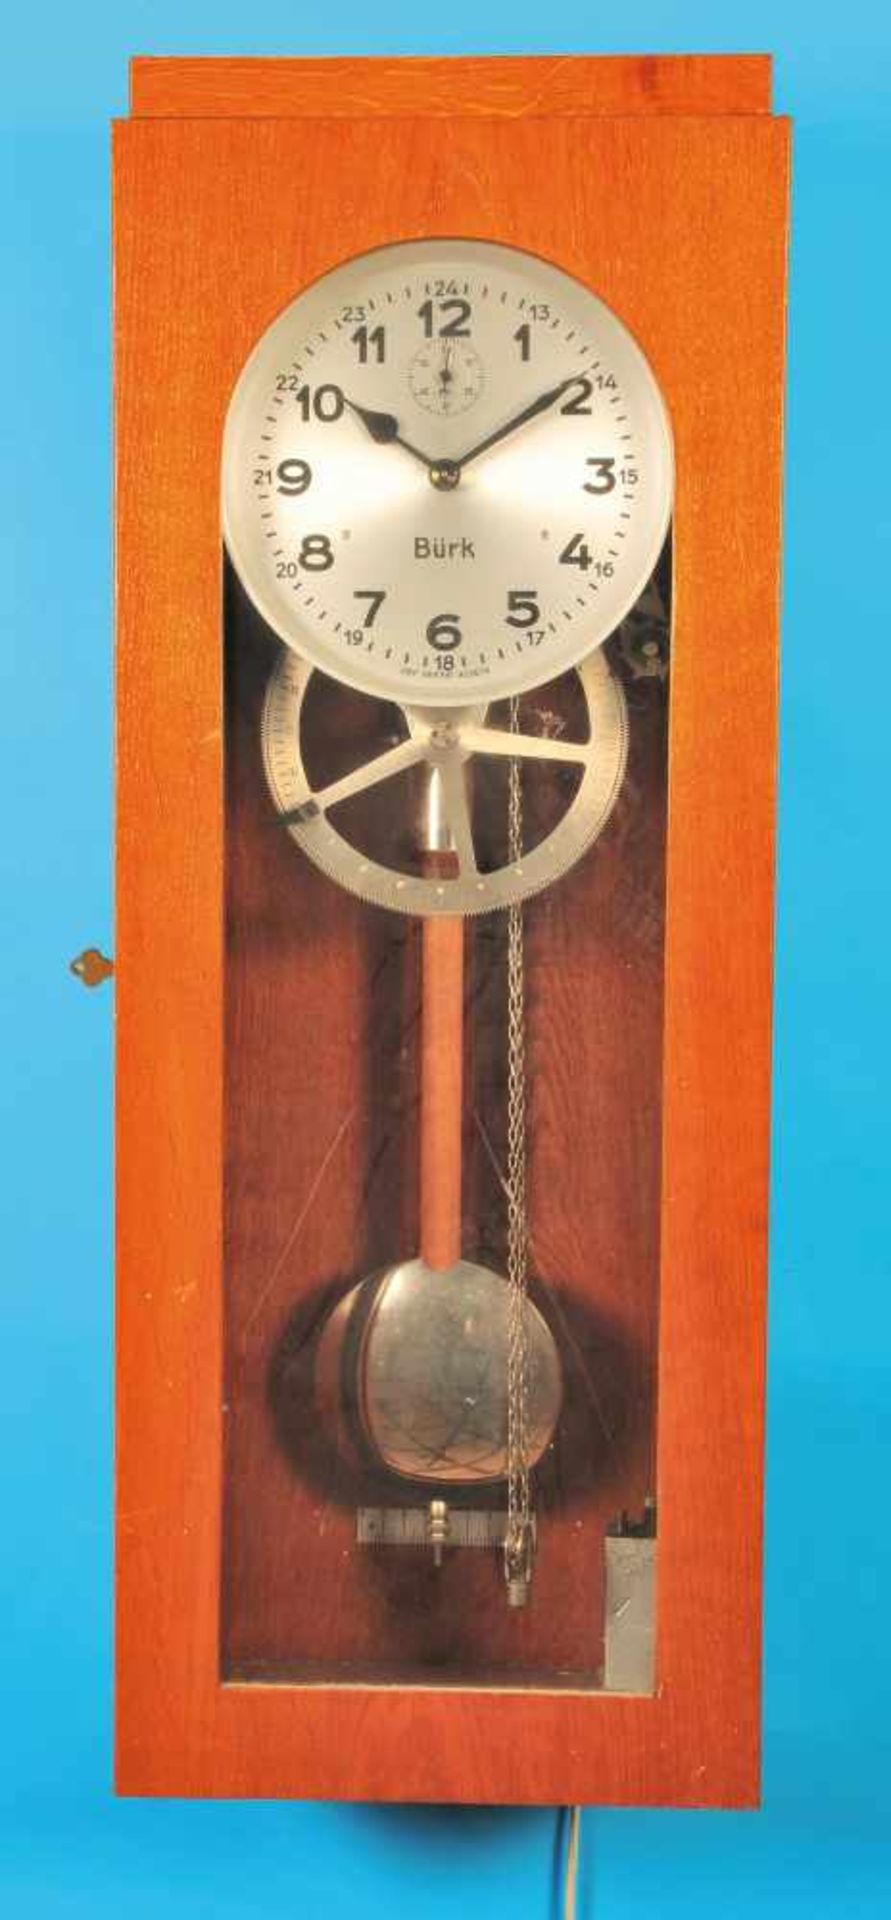 Zentral clock sig. BürkZentraluhr signiert Bürk, braunes frontverglastes Holzgehäuse, Zifferblatt